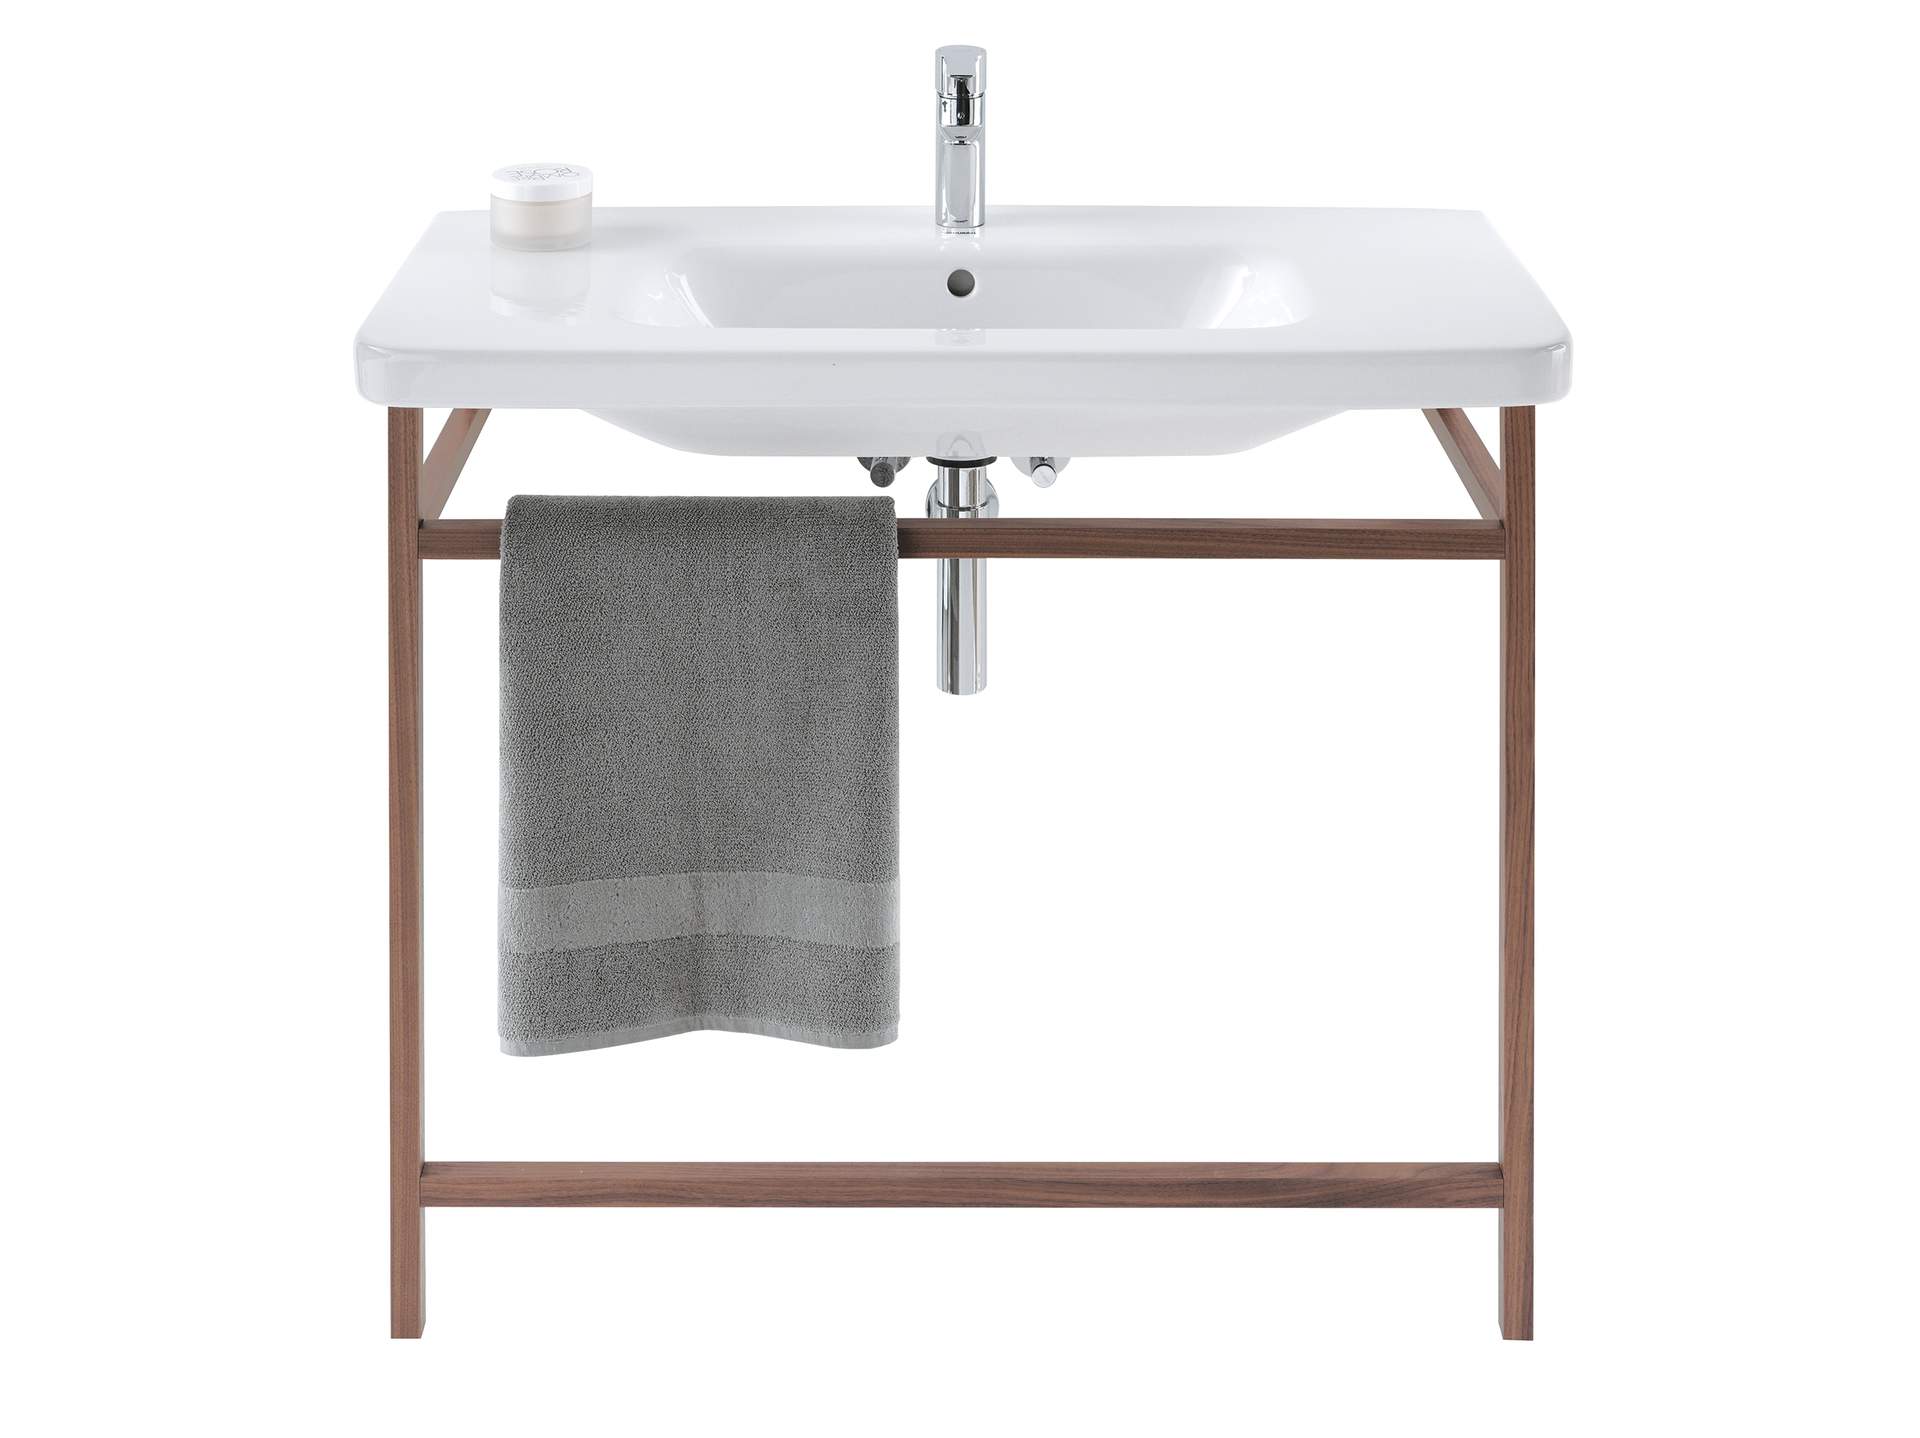 Furniture washbasin, 232012